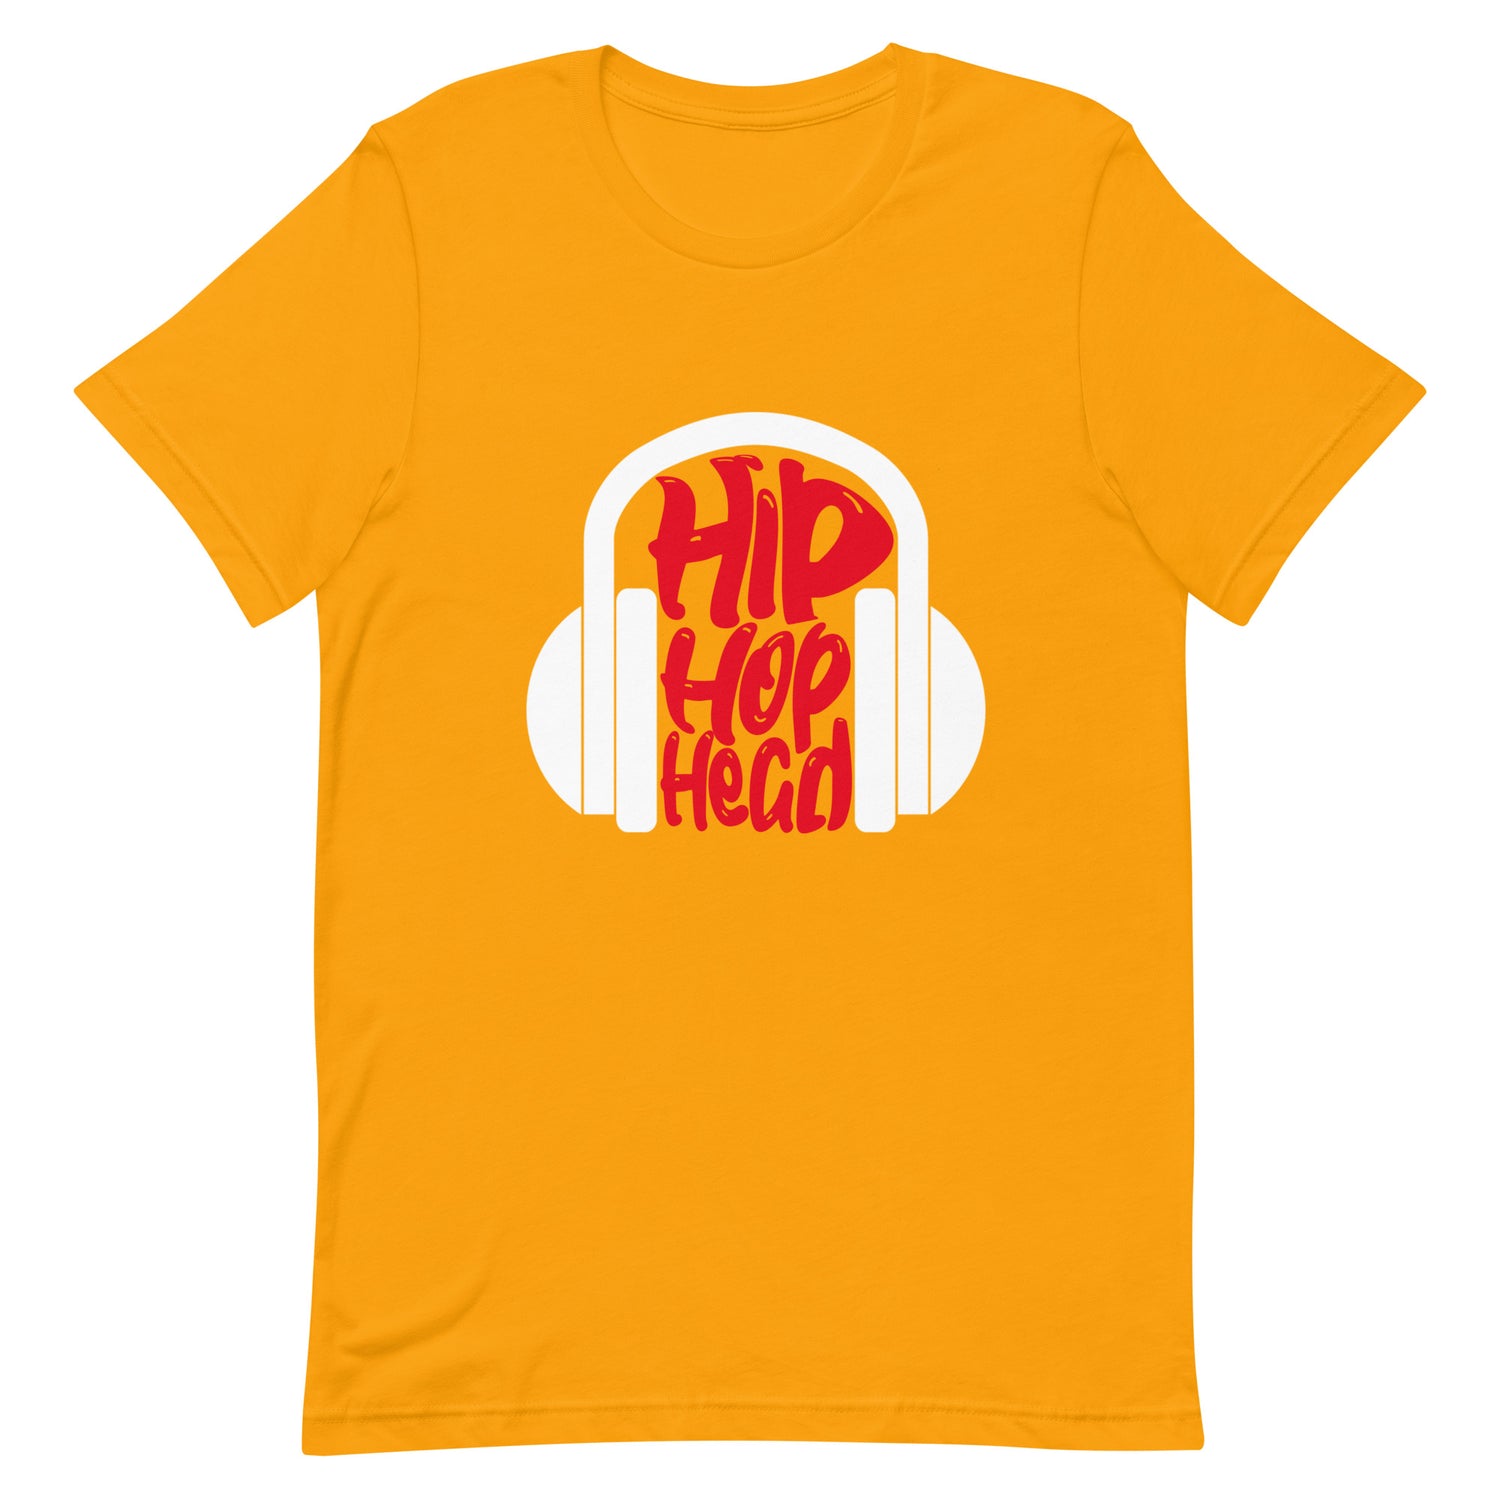 Hip Hop head gold shirt